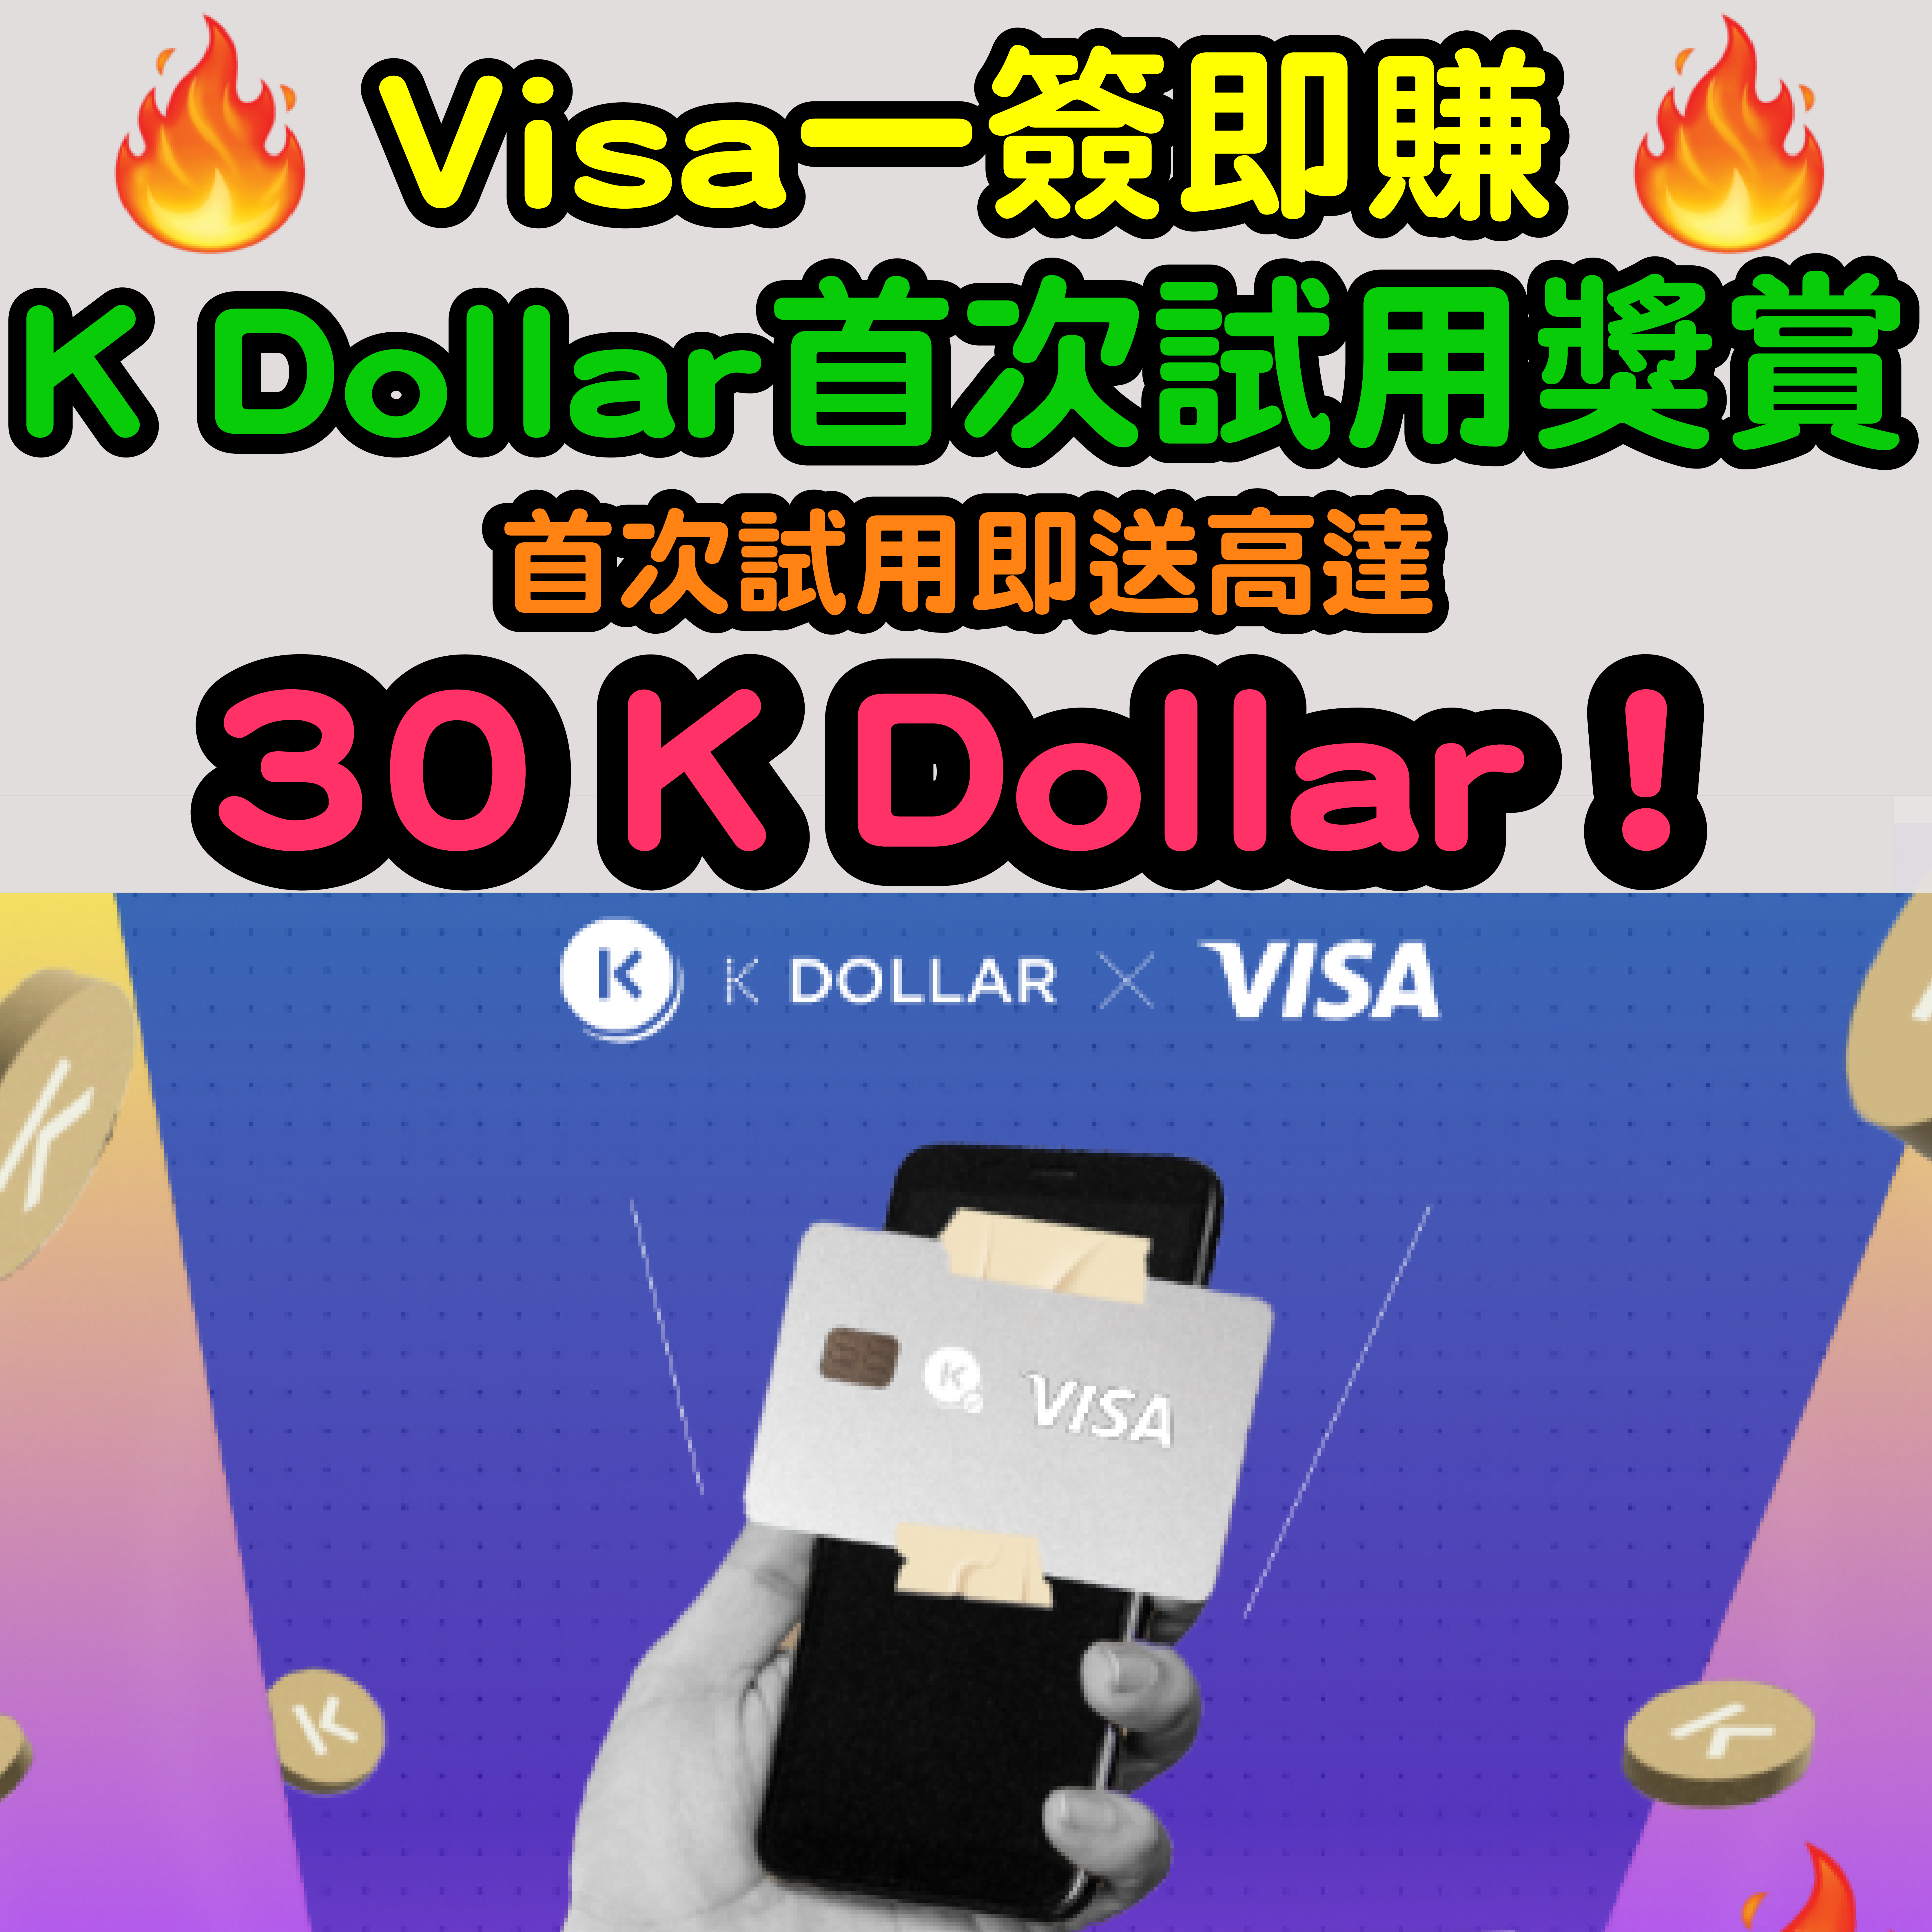 【Visa一簽即賺K Dollar首次試用獎賞🔥🔥】首次試用即送高達30 K Dollar ❗